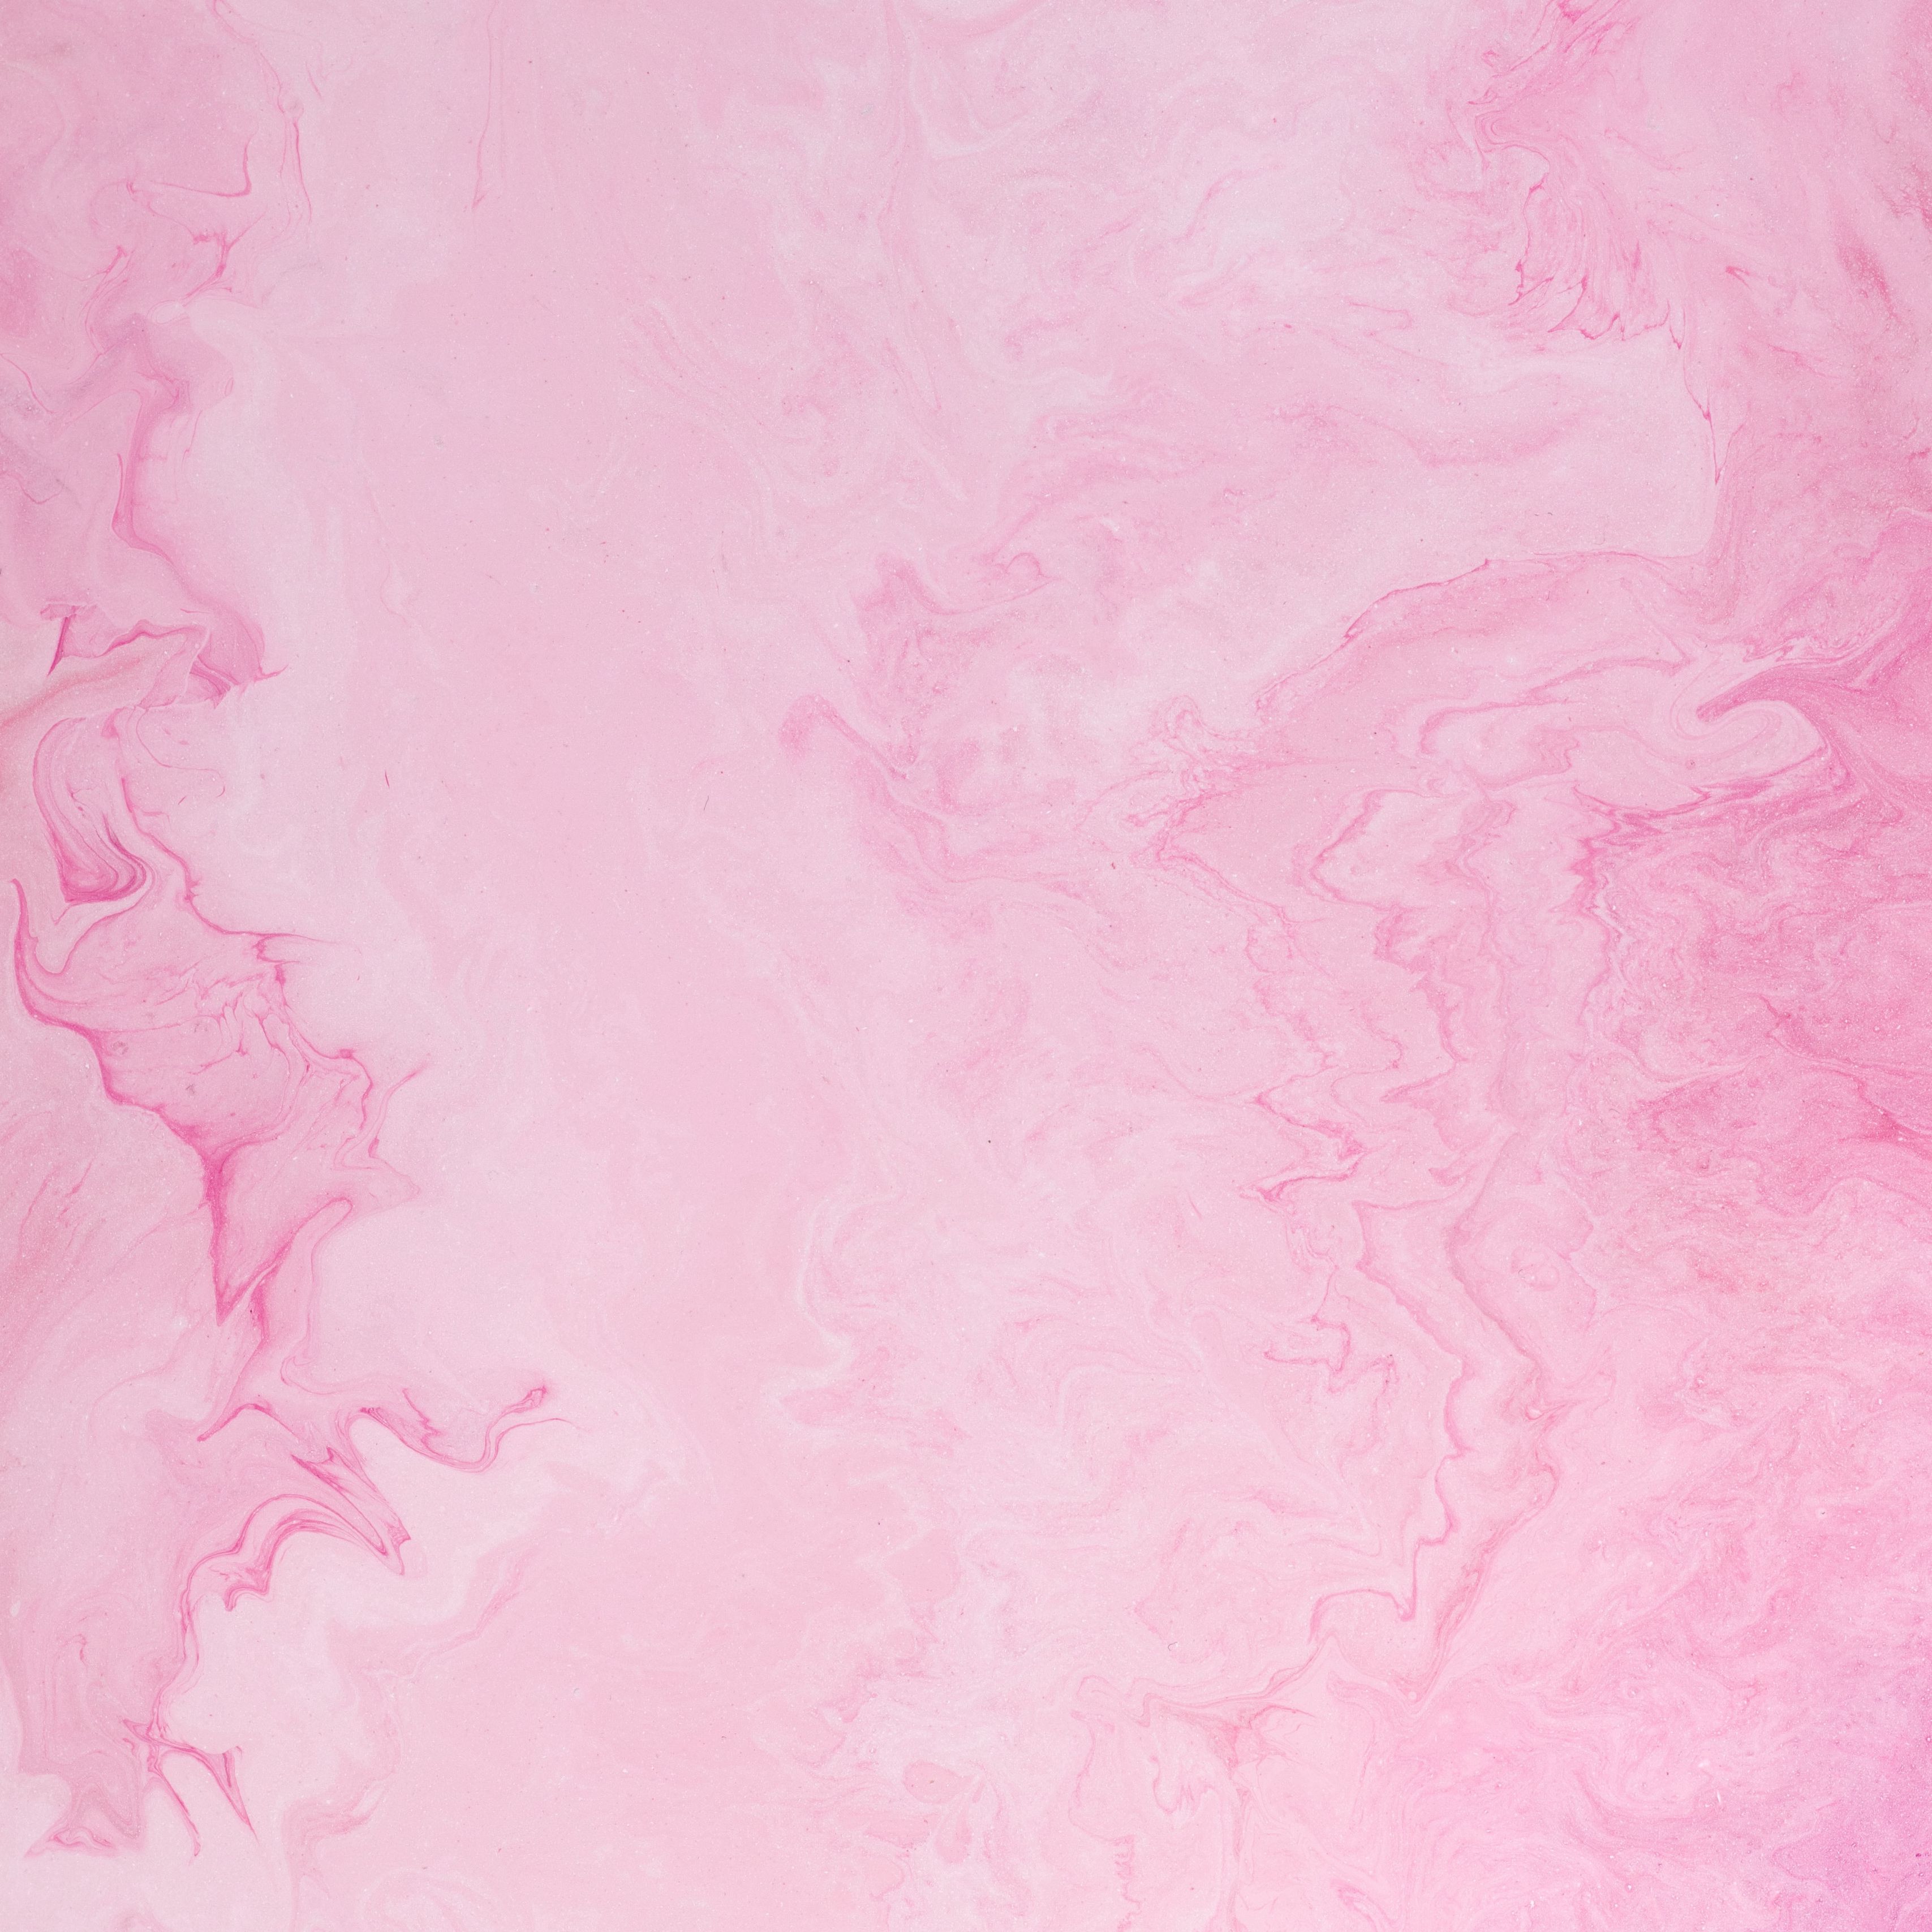 Tải ngay hình nền đẹp mắt với độ phân giải cao là 3415x3415 để trải nghiệm màu hồng ấn tượng cùng những họa tiết vẹt ố, vật liệu và chất lỏng tuyệt đẹp. Khám phá ngay để cảm nhận sự tinh tế và thẩm mỹ của bức hình này.